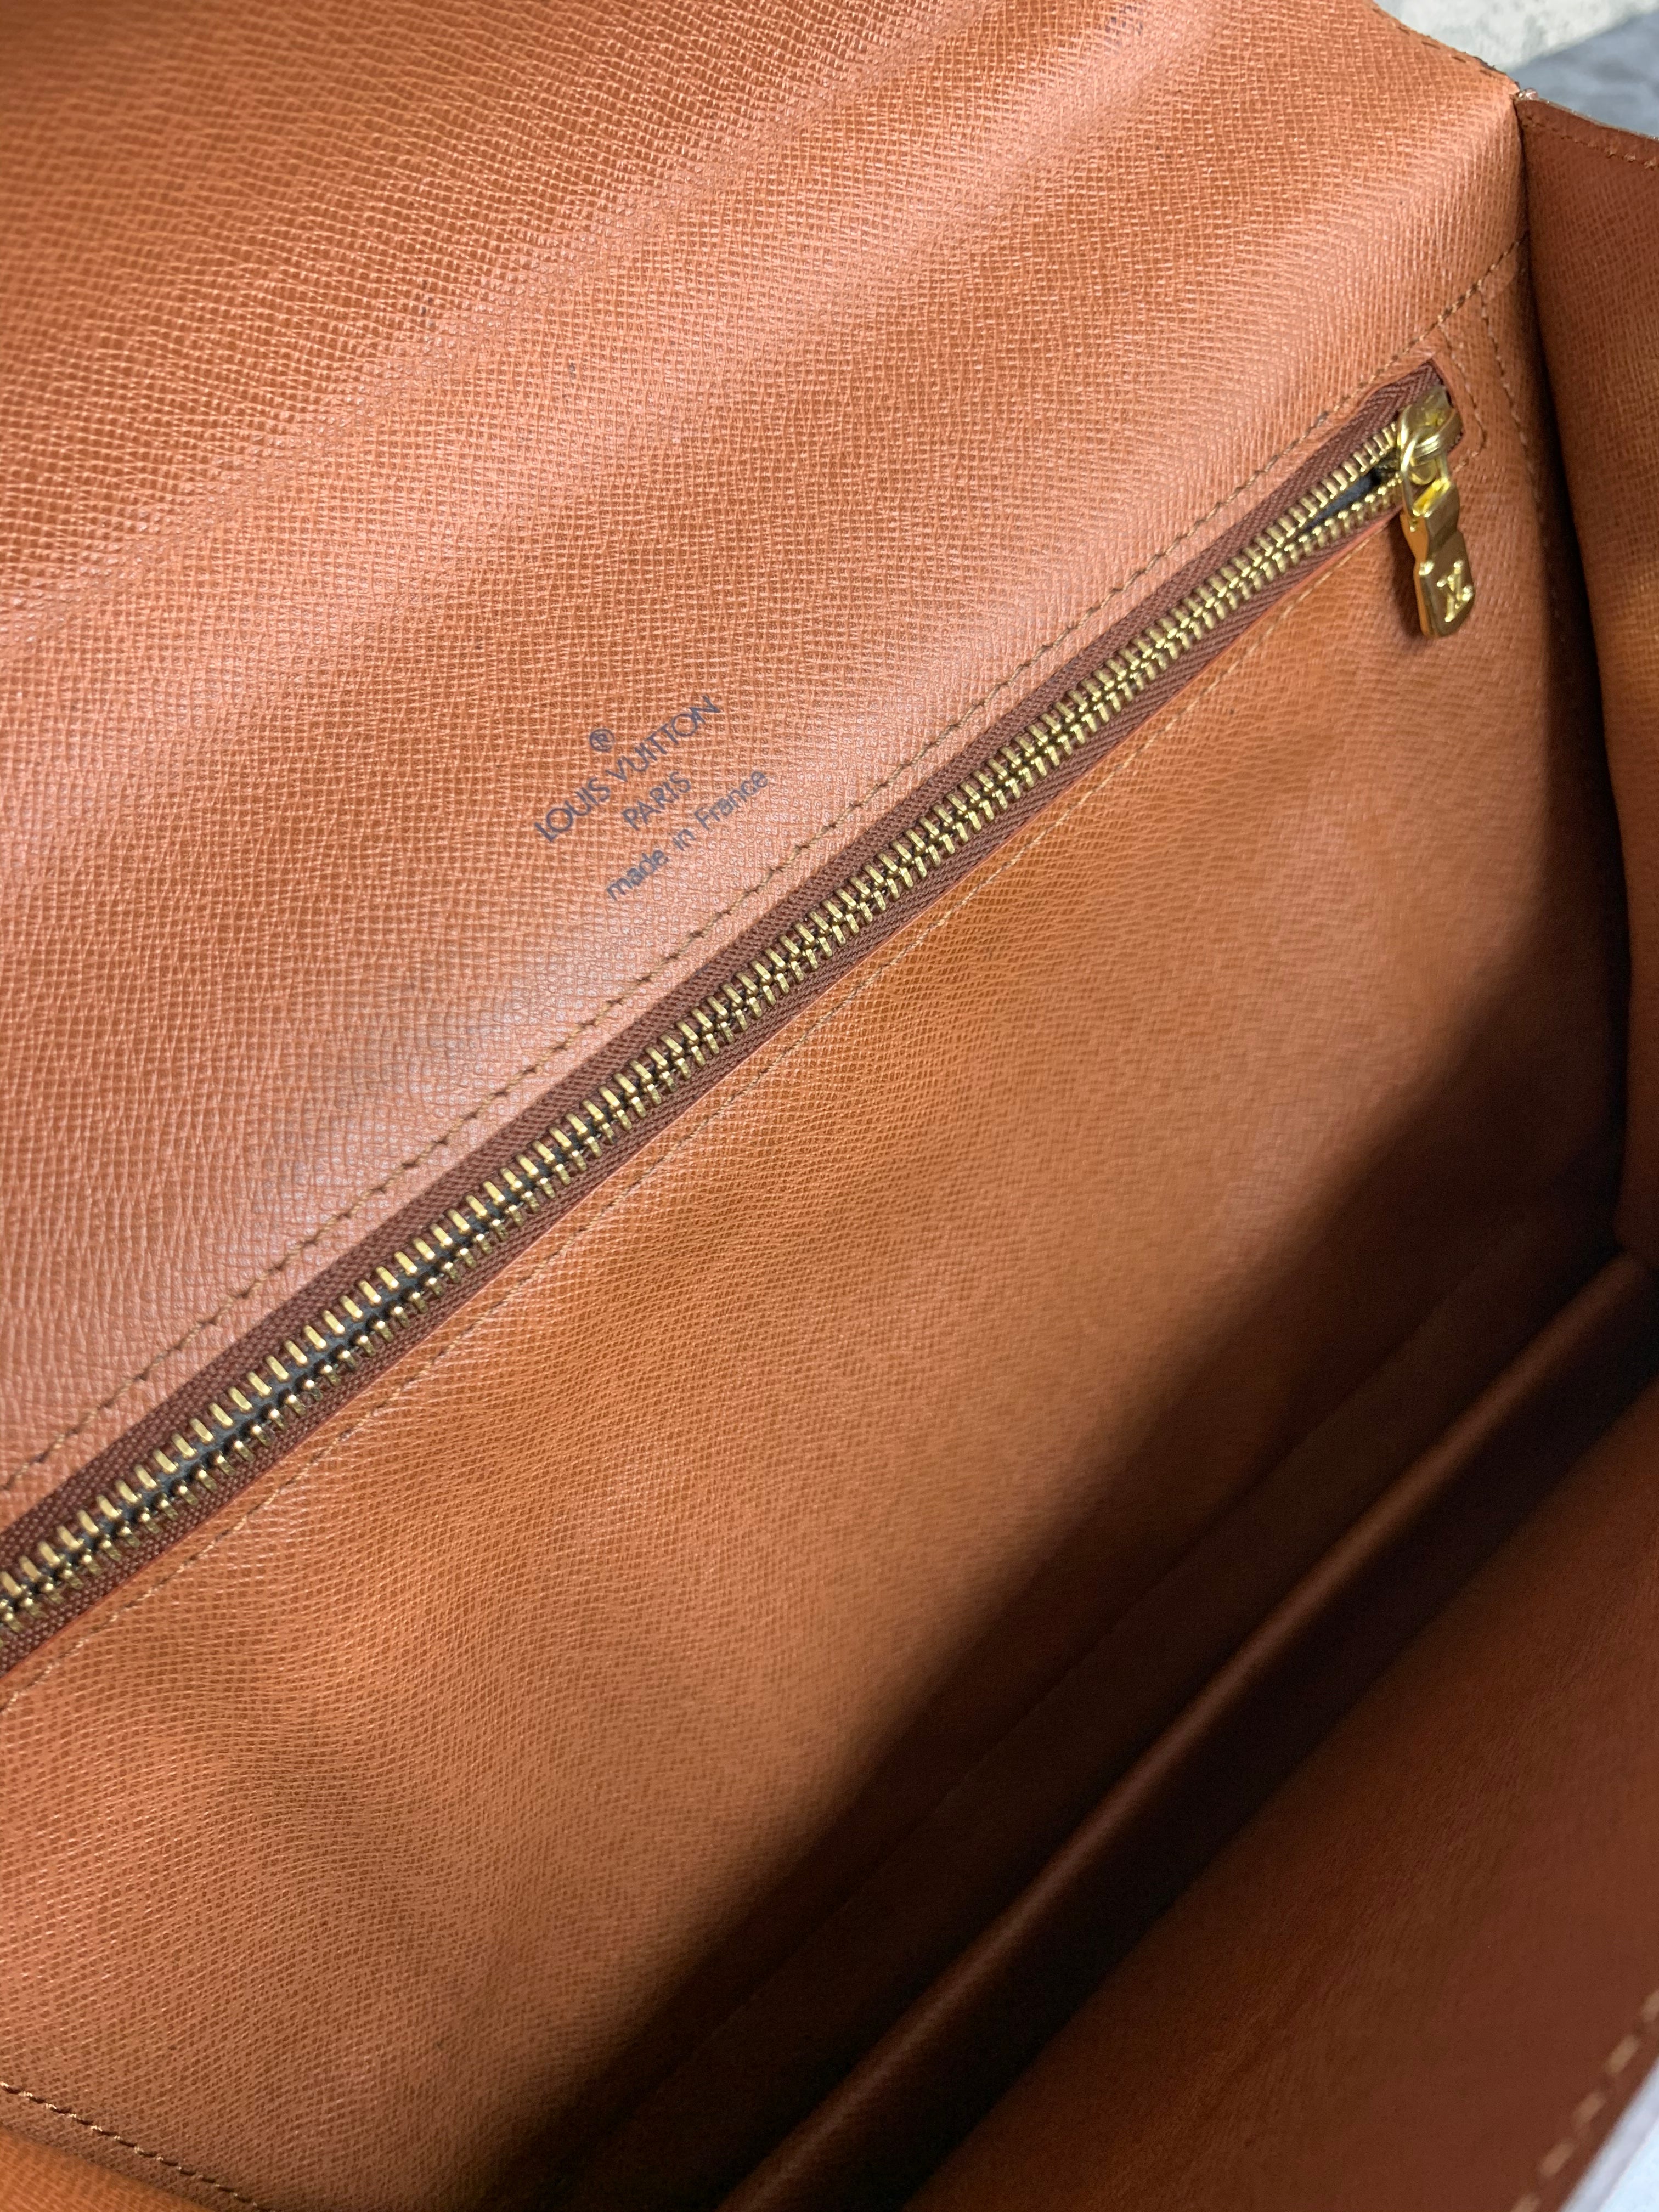 Authentic Louis Vuitton Monogram Hand Shoulder Bag Monceau #13822 